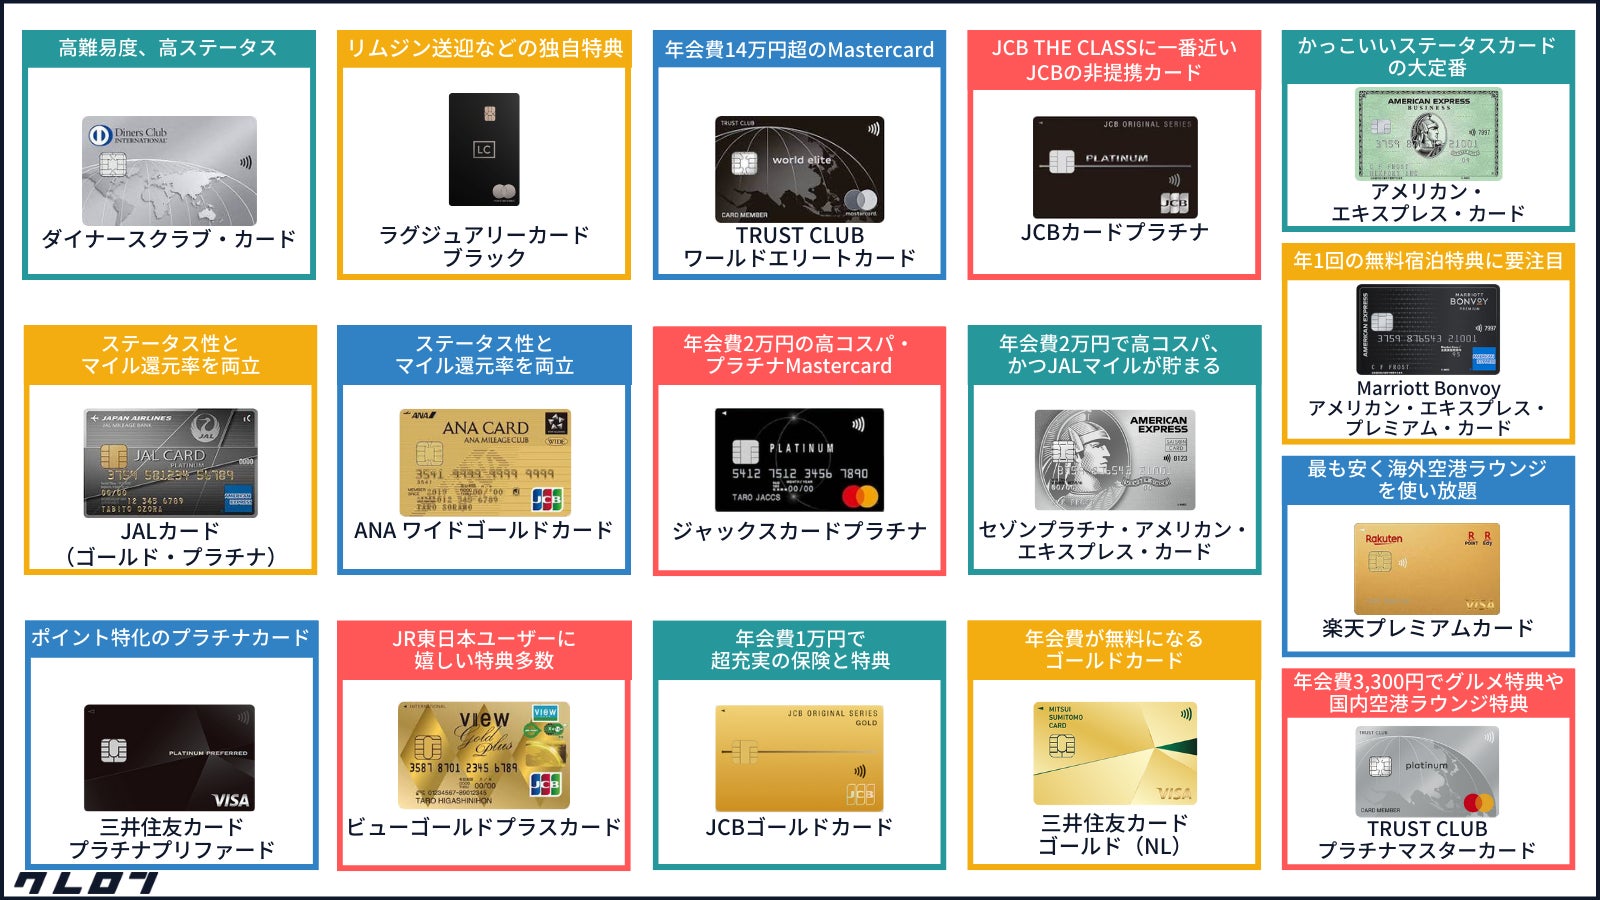 「クレジットカードステータスに関するカオスマップ」を金融メディア「クレロン」にて公開しました